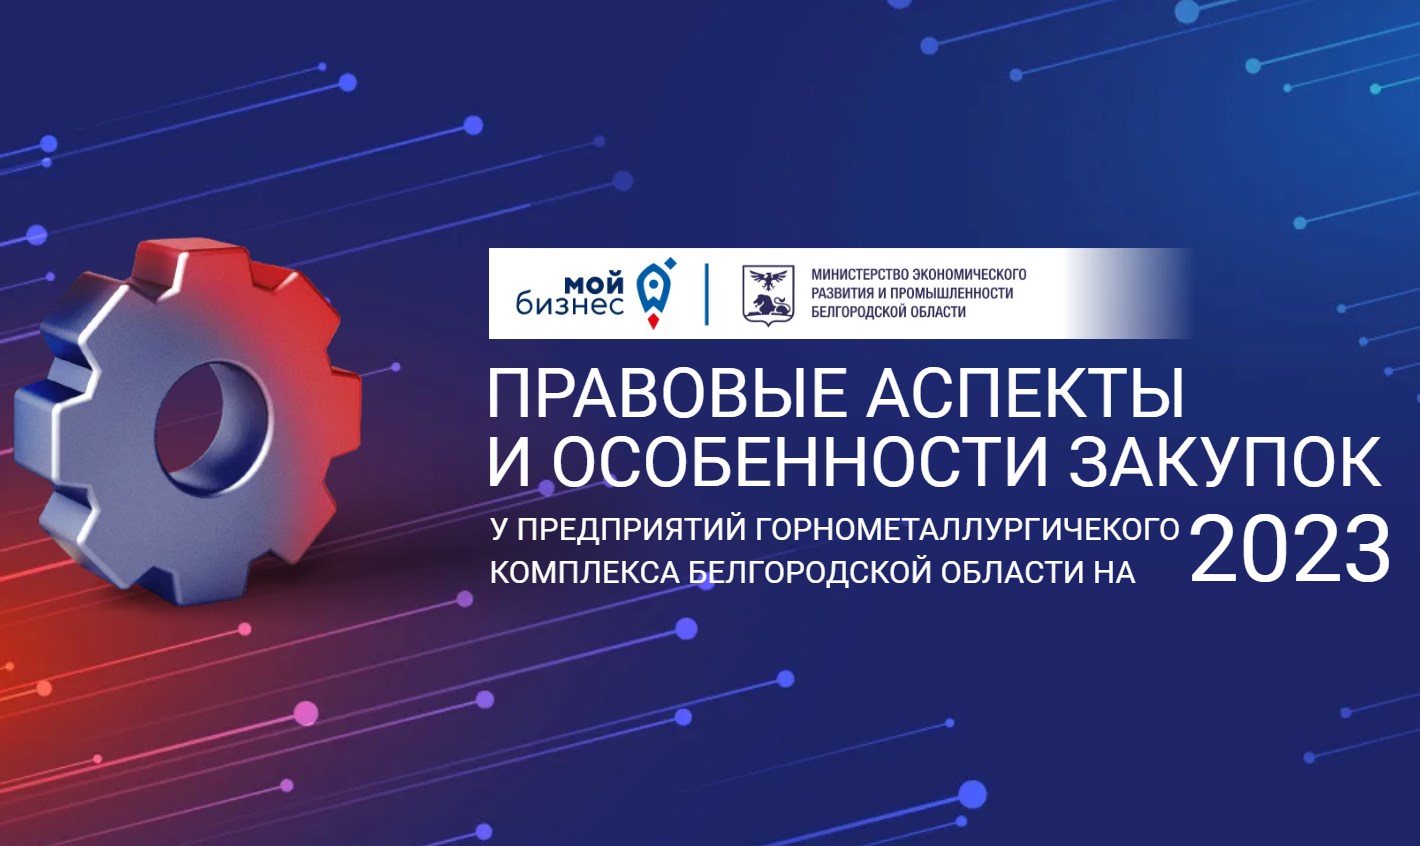 Министерство экономического развития и промышленности Белгородской области проводит практическую конференцию.